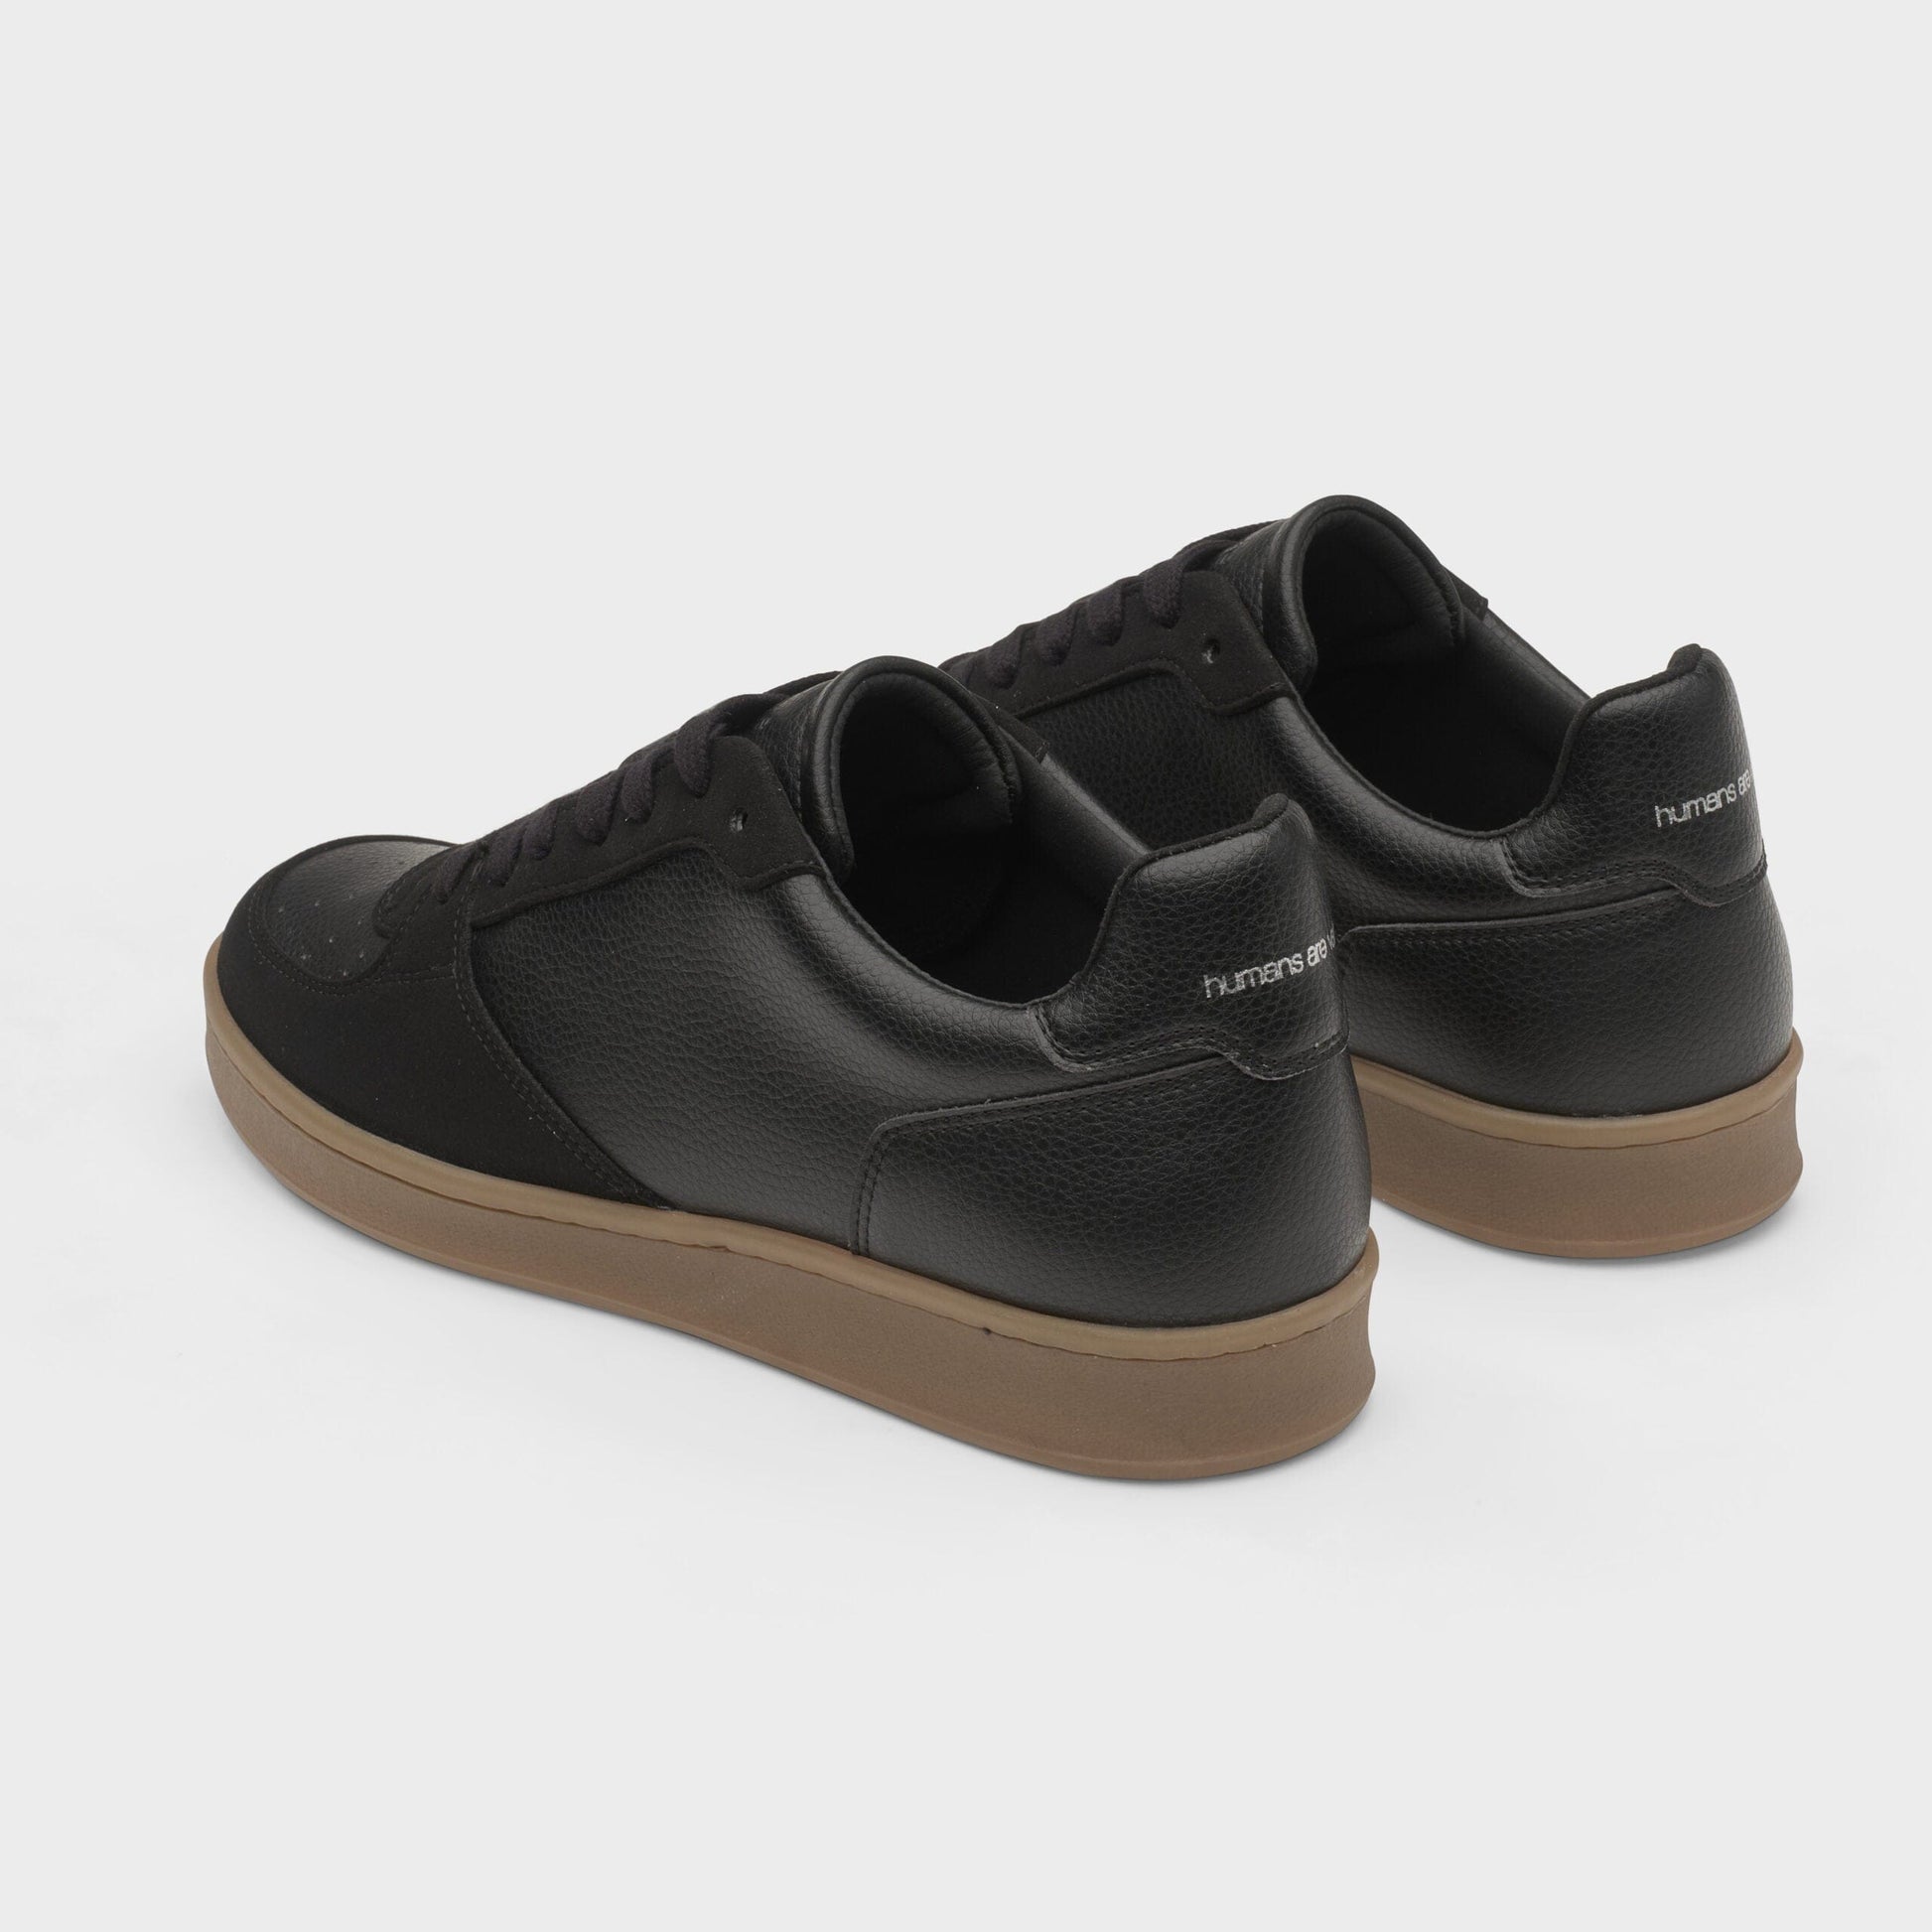 Eden V3 Sustainable Sneaker, Black